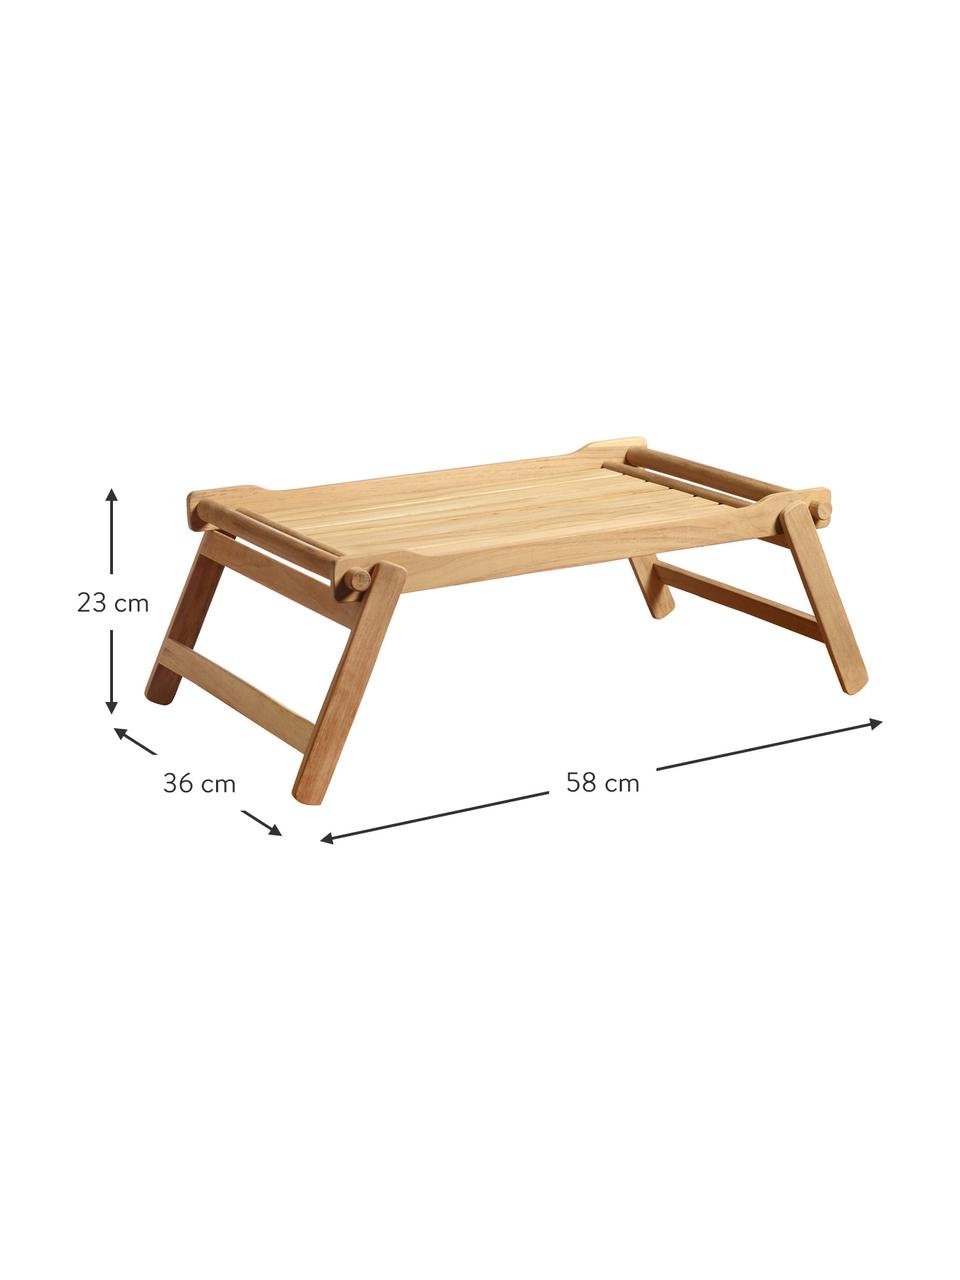 Skládací dřevěný servírovací podnos Bed, D 58 cm x Š 36 cm, Broušené teakové dřevo, Teakové dřevo, D 58 cm, Š 36 cm